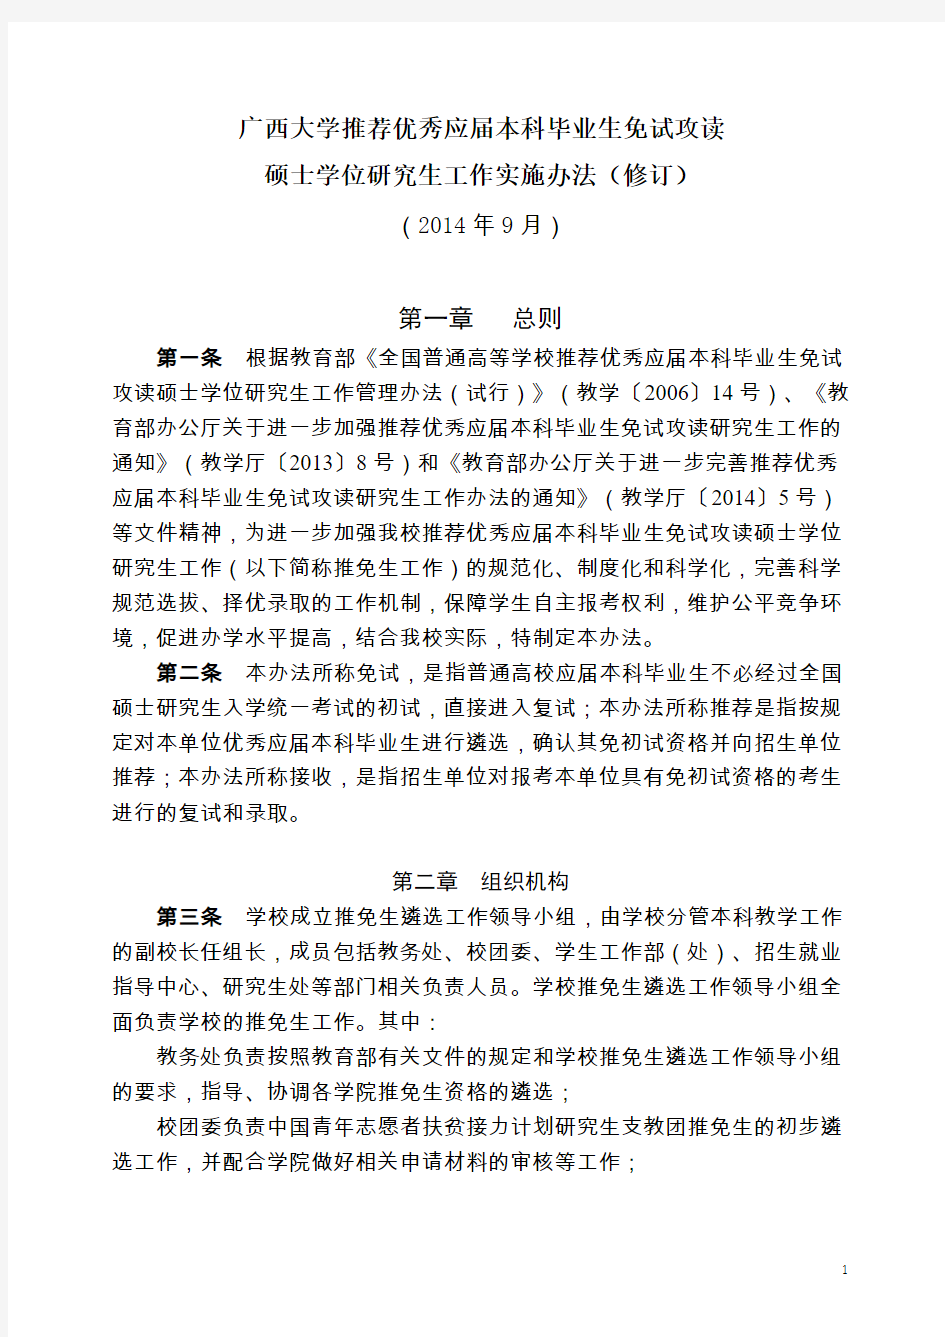 广西大学2015年推免生文件(拟报批方案)